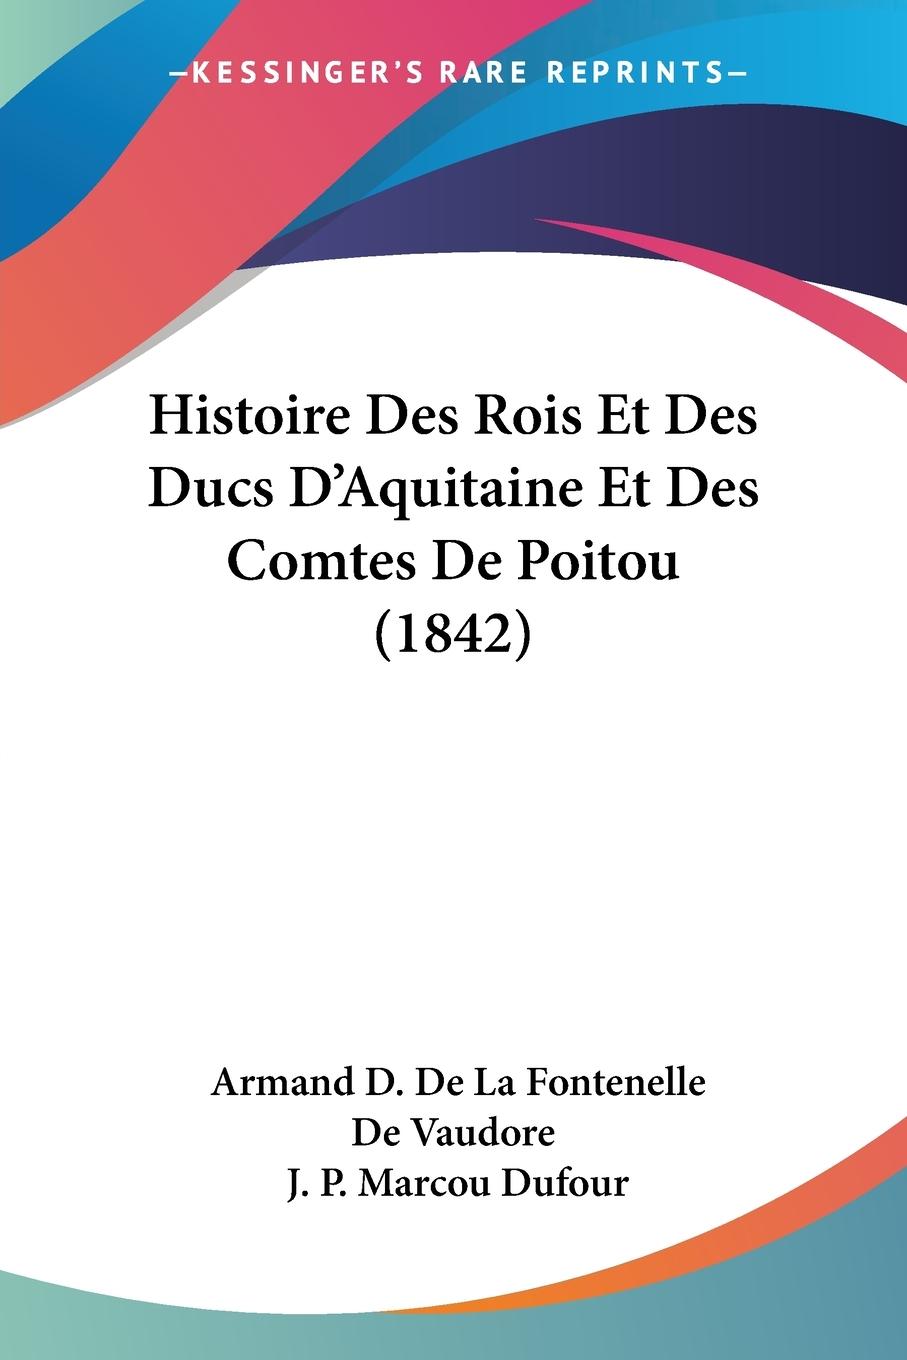 Histoire Des Rois Et Des Ducs D Aquitaine Et Des Comtes De Poitou (1842) - De Vaudore, Armand D. De La Fontenelle Dufour, J. P. Marcou